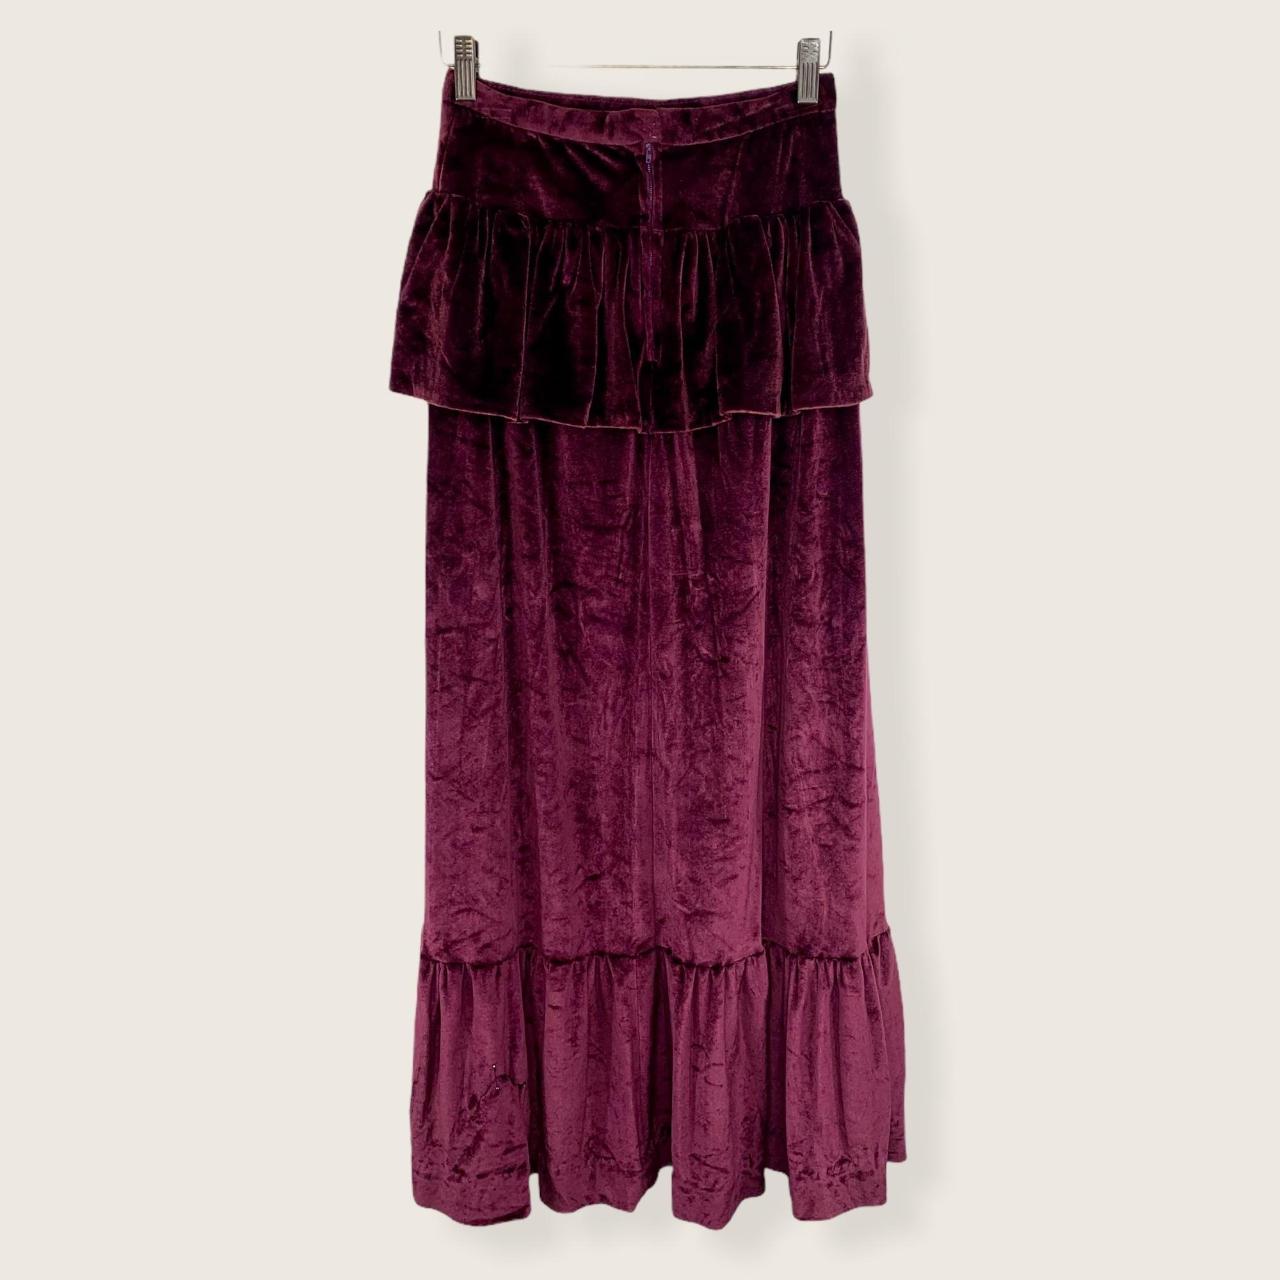 Product Image 4 - Handmade Crush Velvet Maxi Skirt
Back